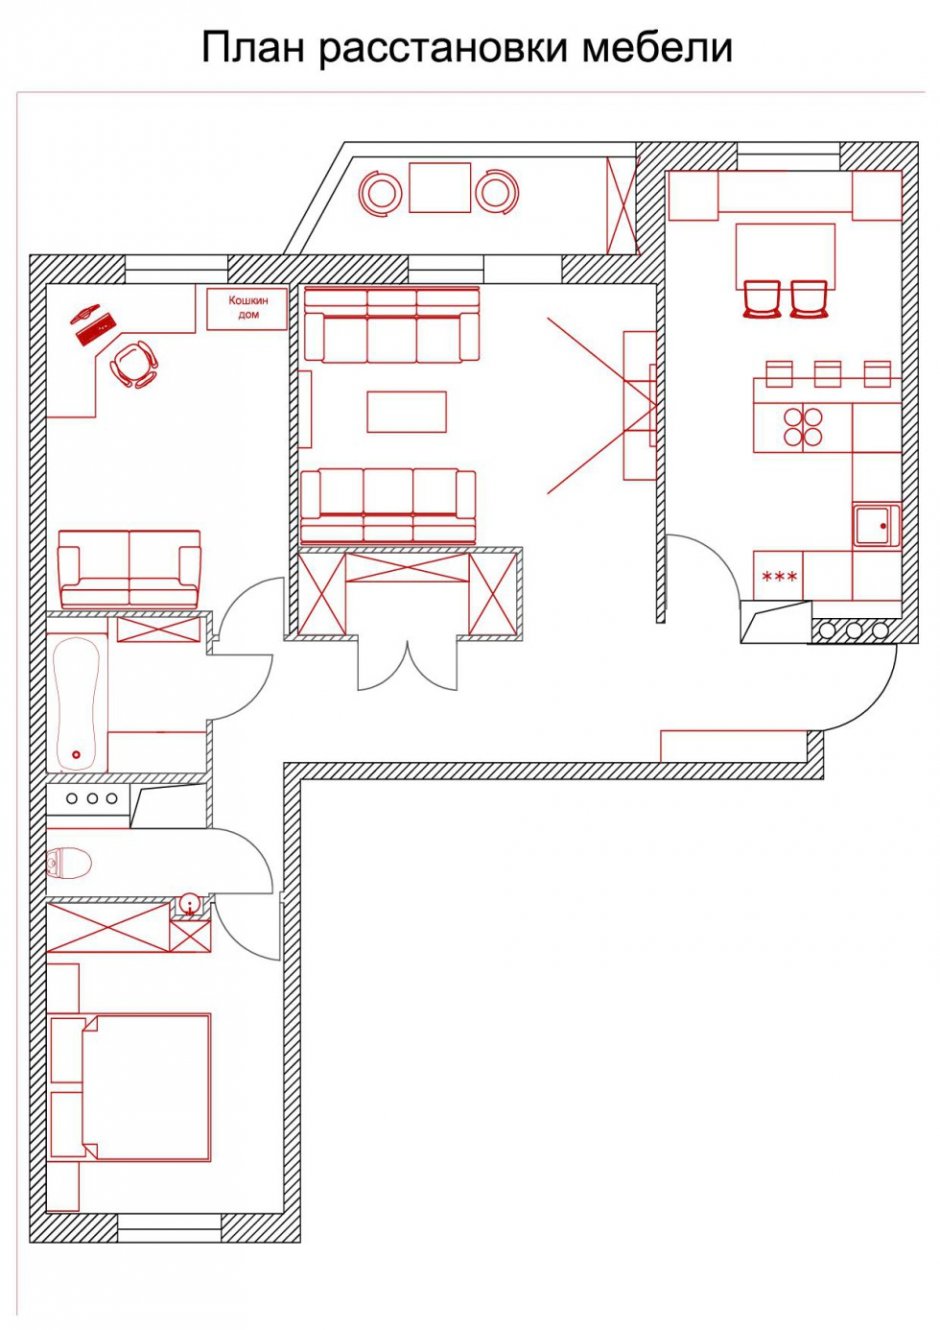 планировка мебели в трехкомнатной квартире